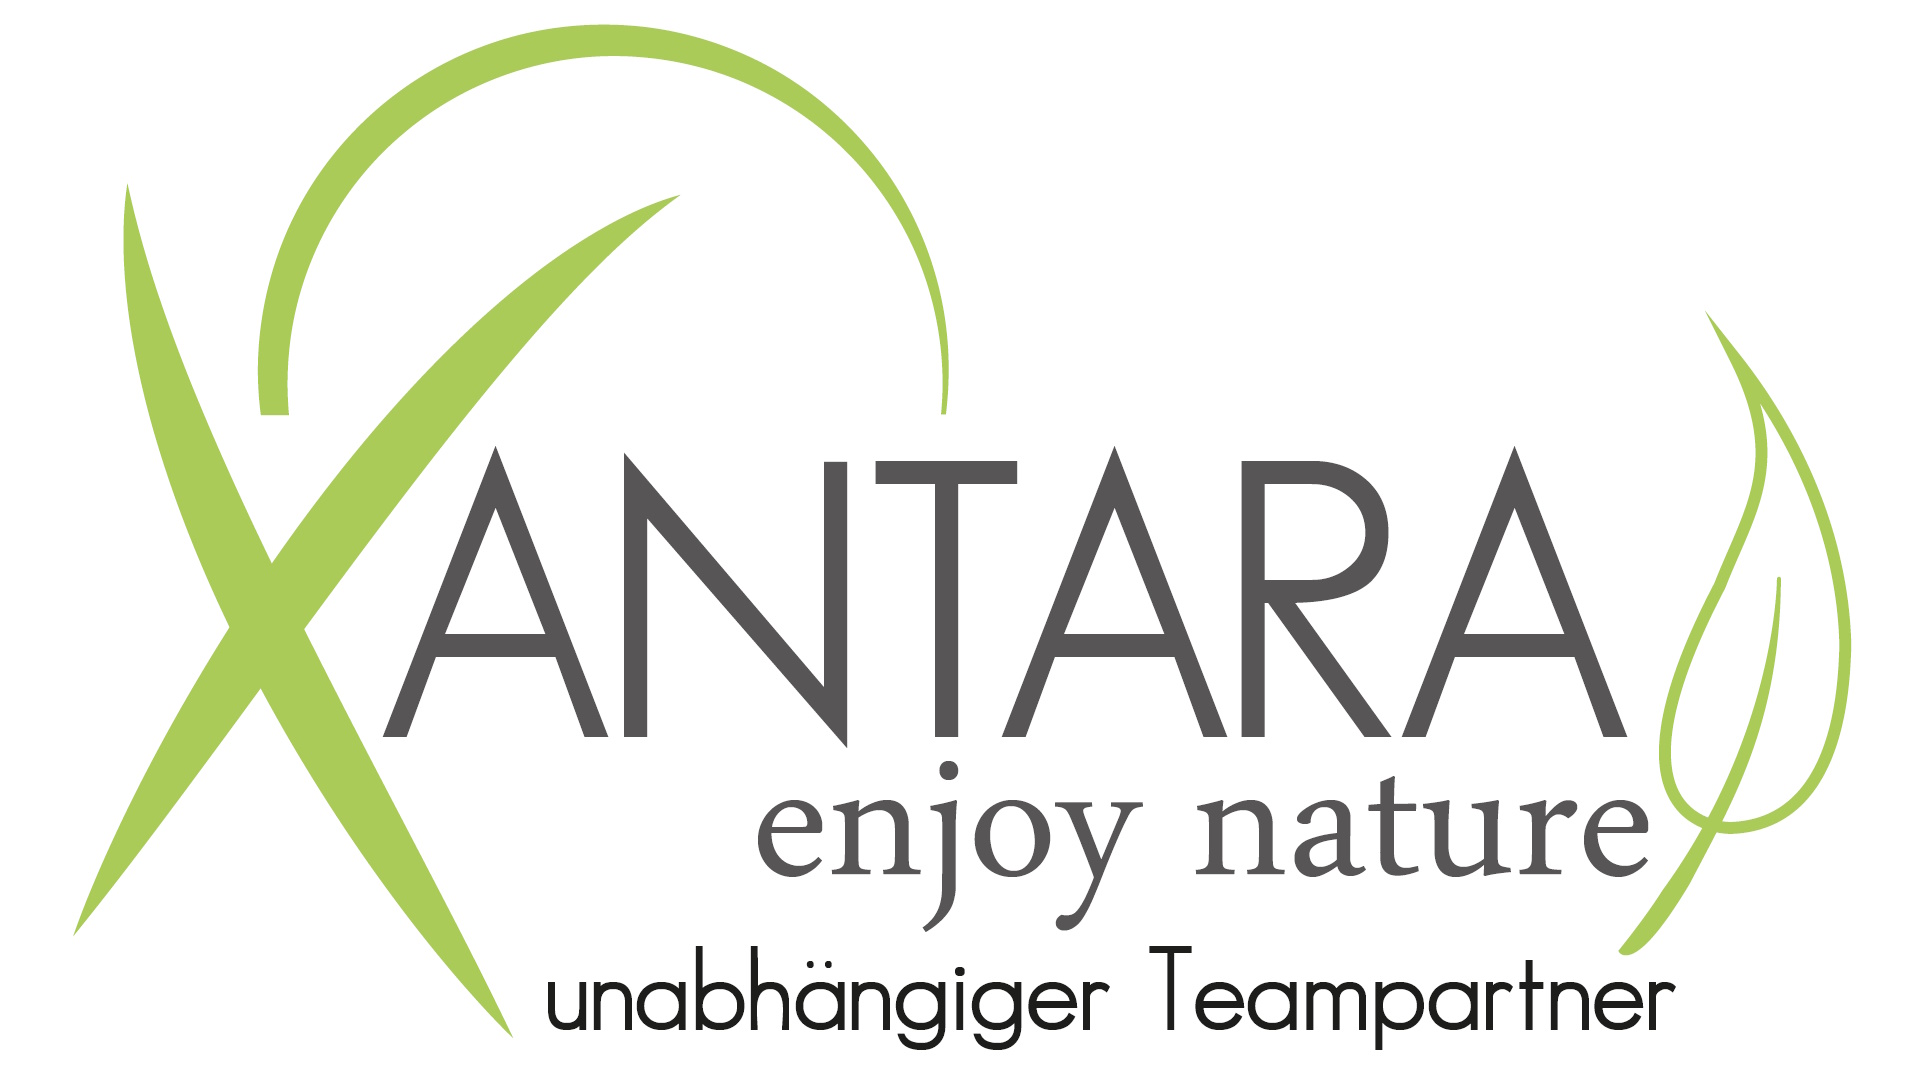 XANTARA enjoy nature - unabhängiger Teampartner